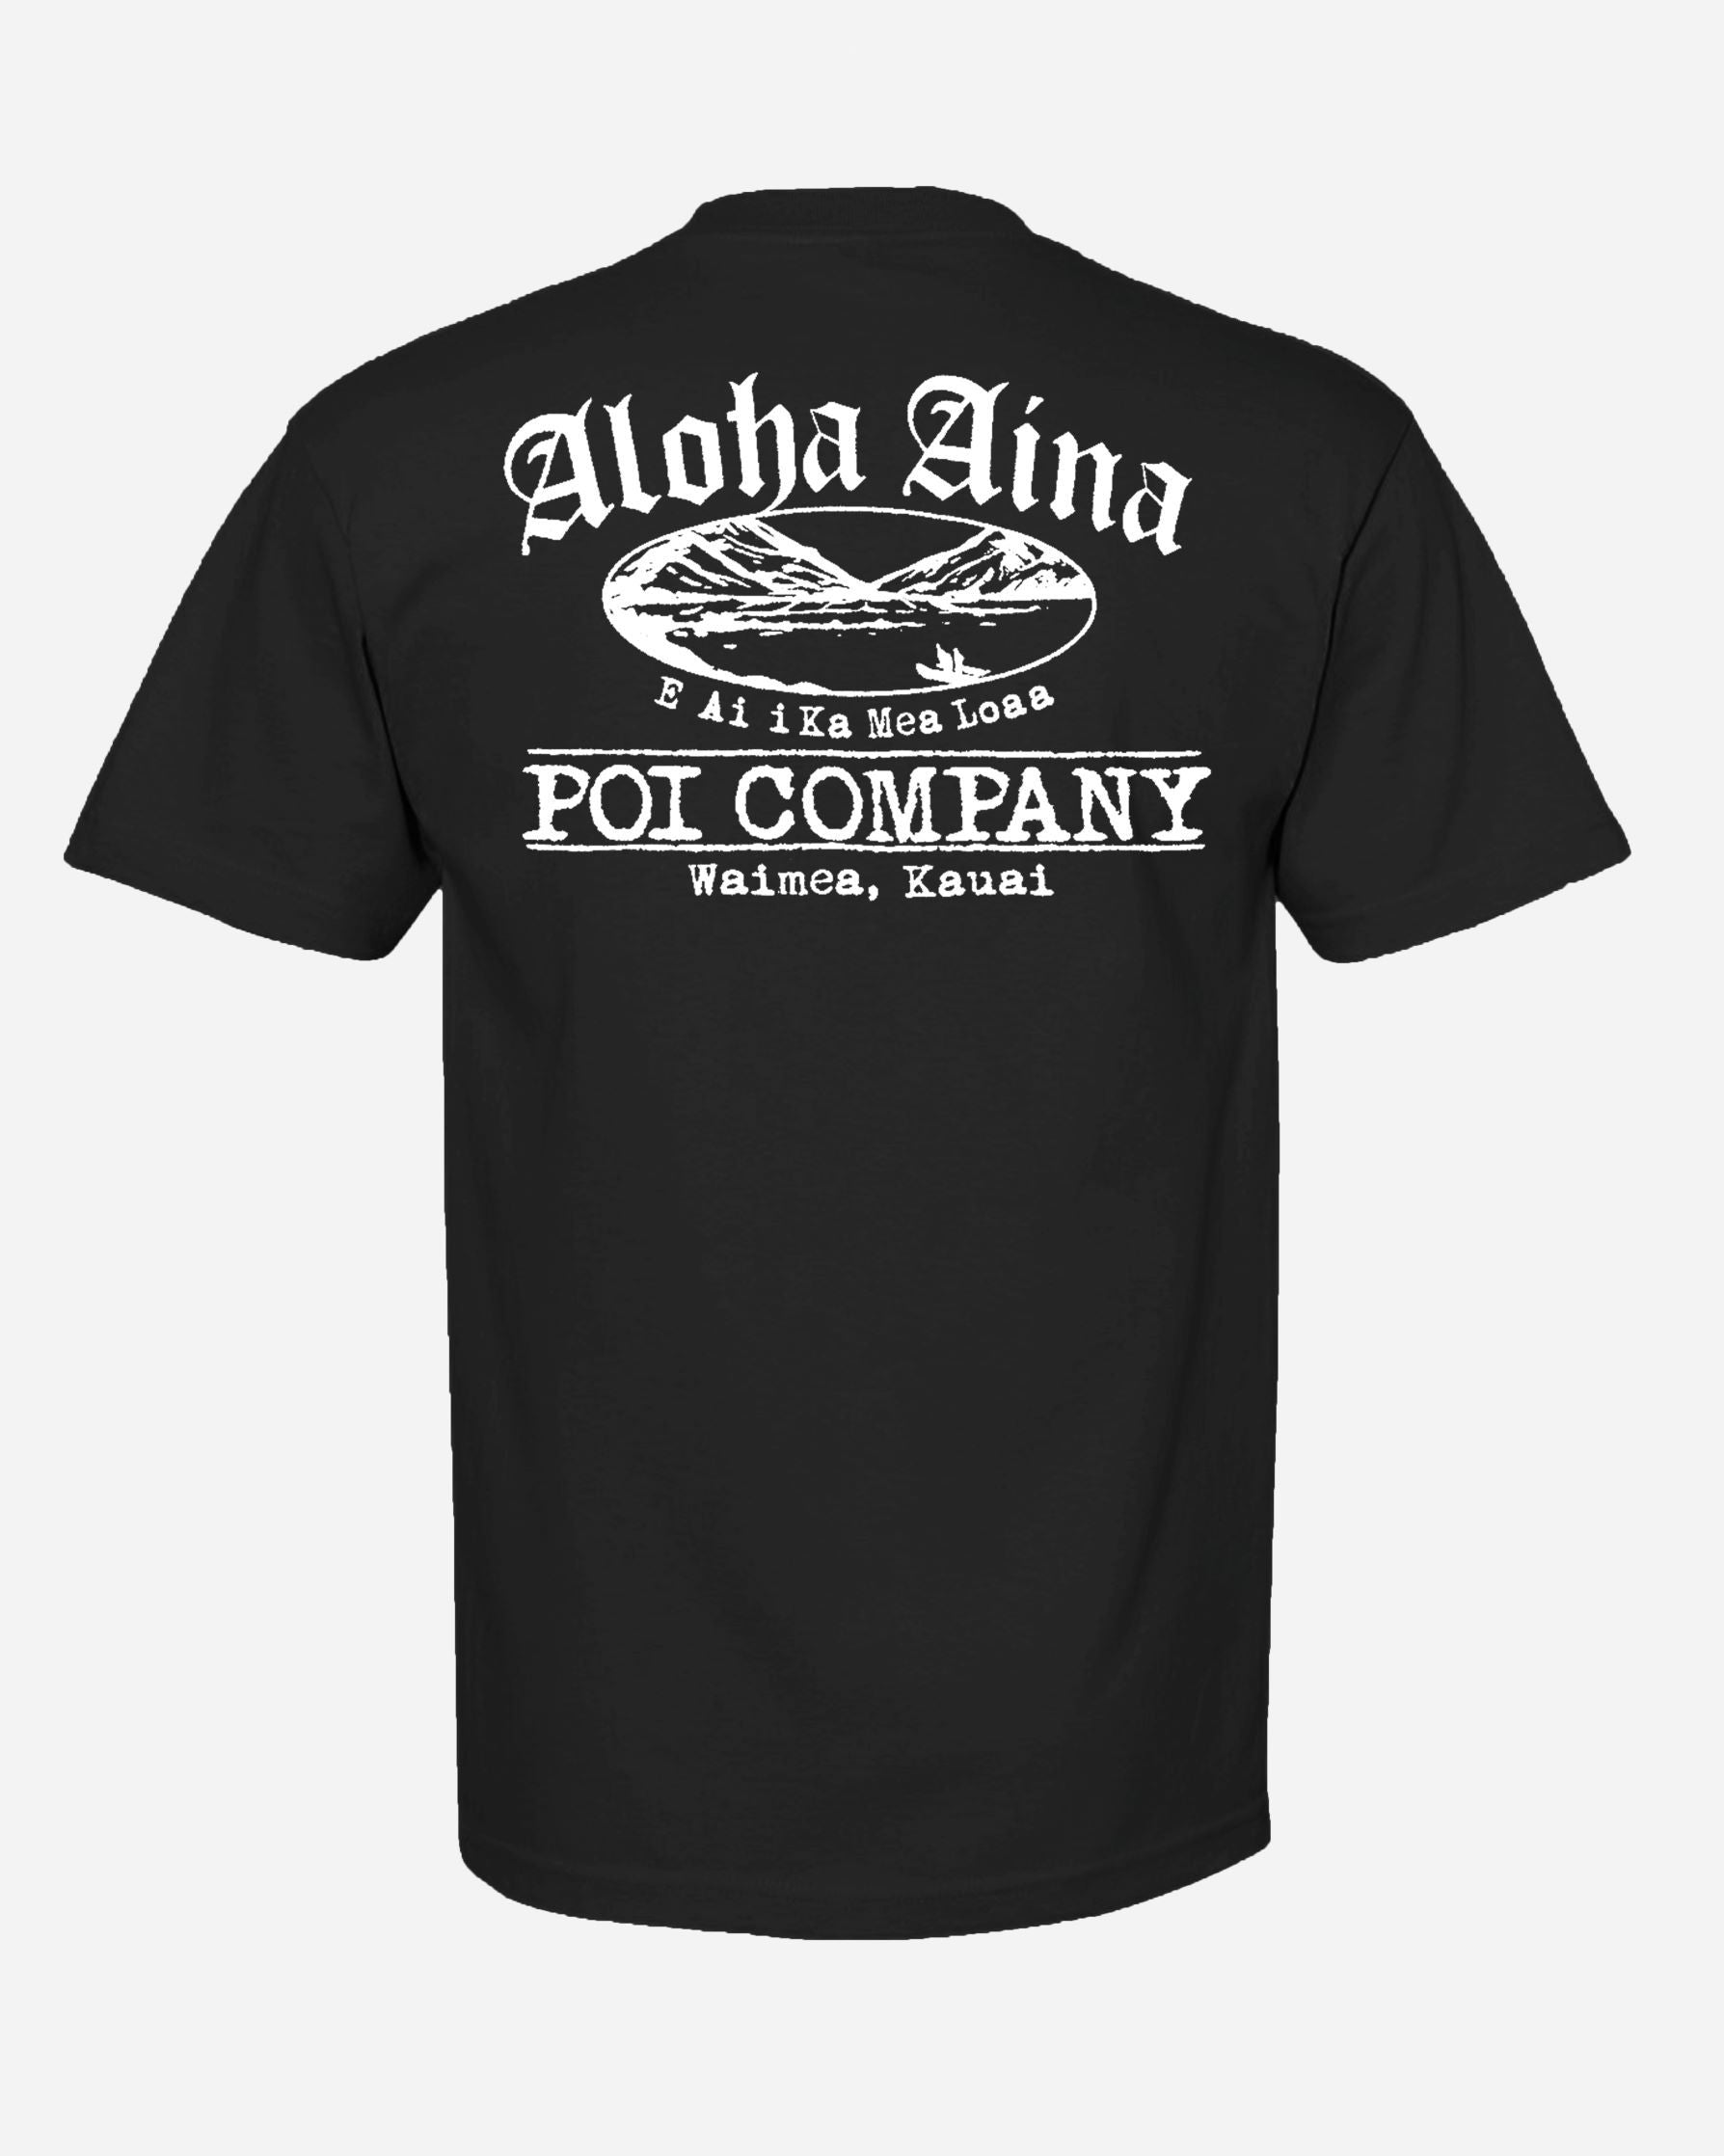 Pop-Up Mākeke - Aloha Aina Poi Co. - Mauka Logo Men's Short Sleeve T-Shirt - Black - Back View